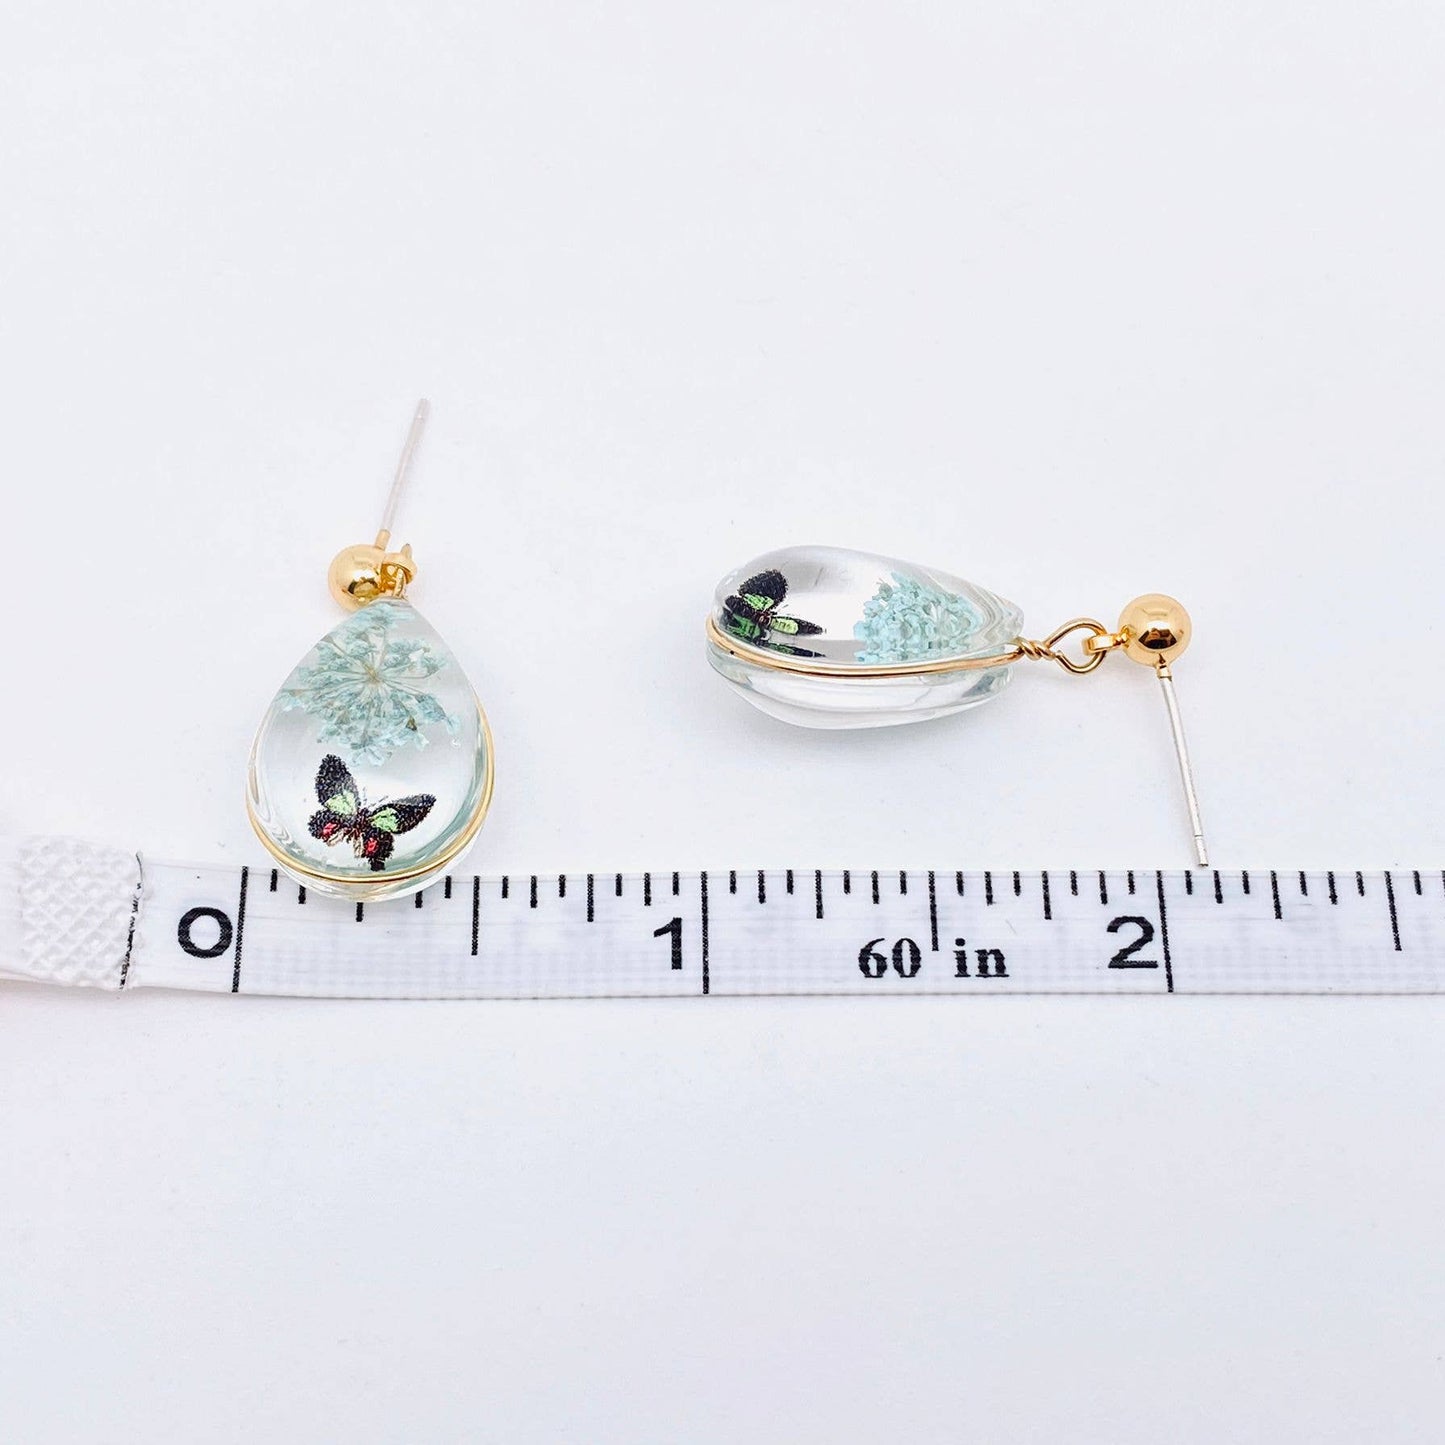 Butterfly Queen Anne's Lace Teardrop Charm Post Earrings